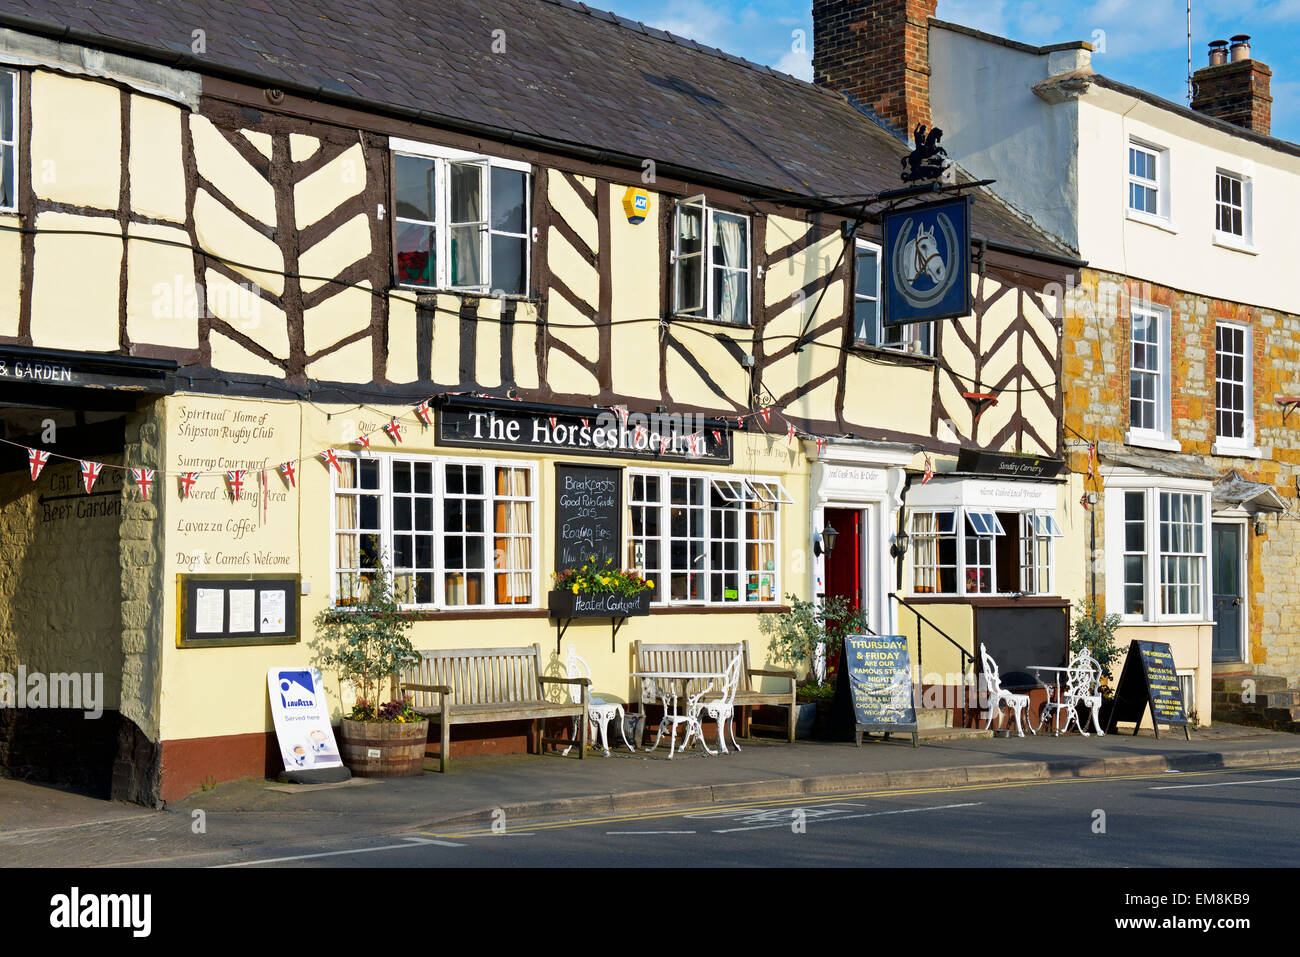 Il pub a ferro di cavallo, Shipston on Stour,Warwickshire, Inghilterra, Regno Unito Foto Stock